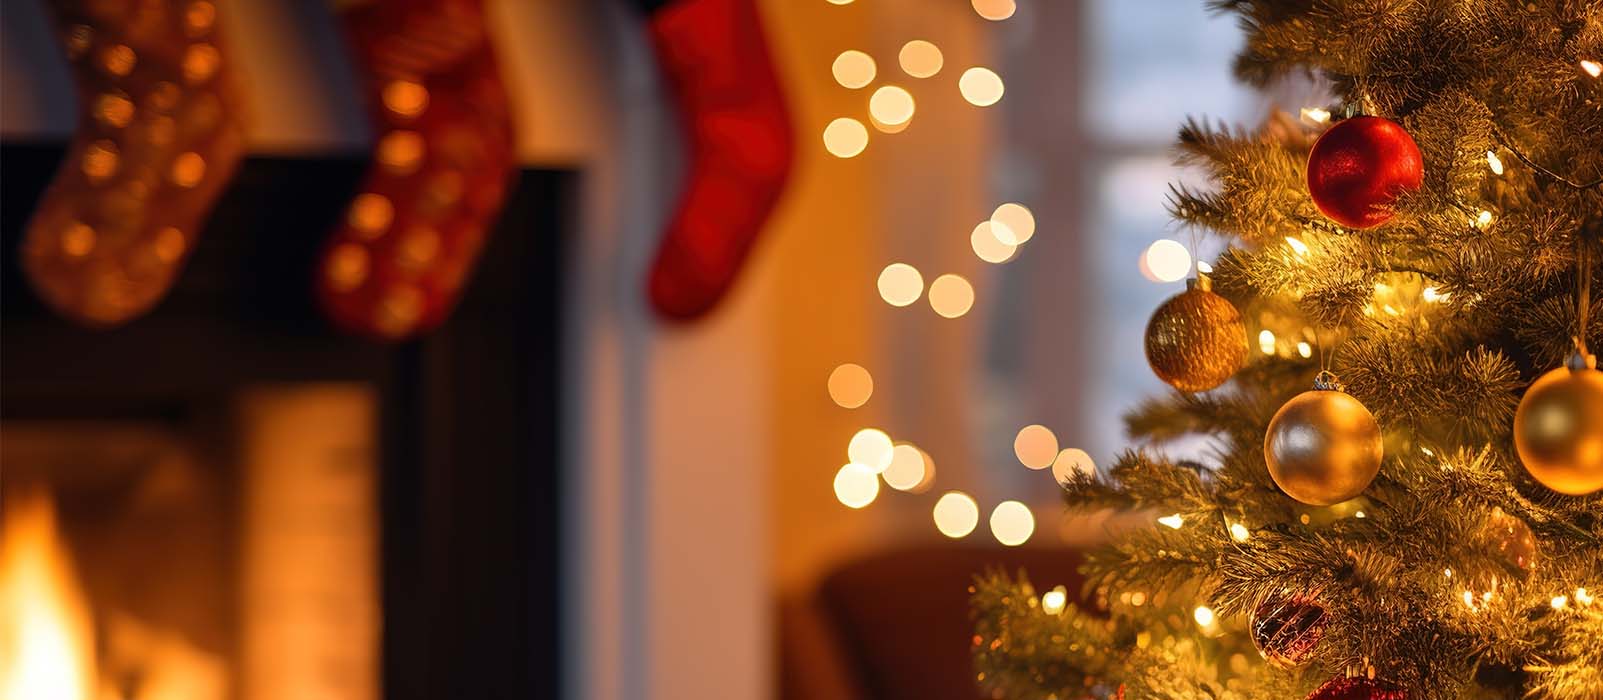 Noël traditionnel : menu, ambiance et idée cadeau Noël petit budget